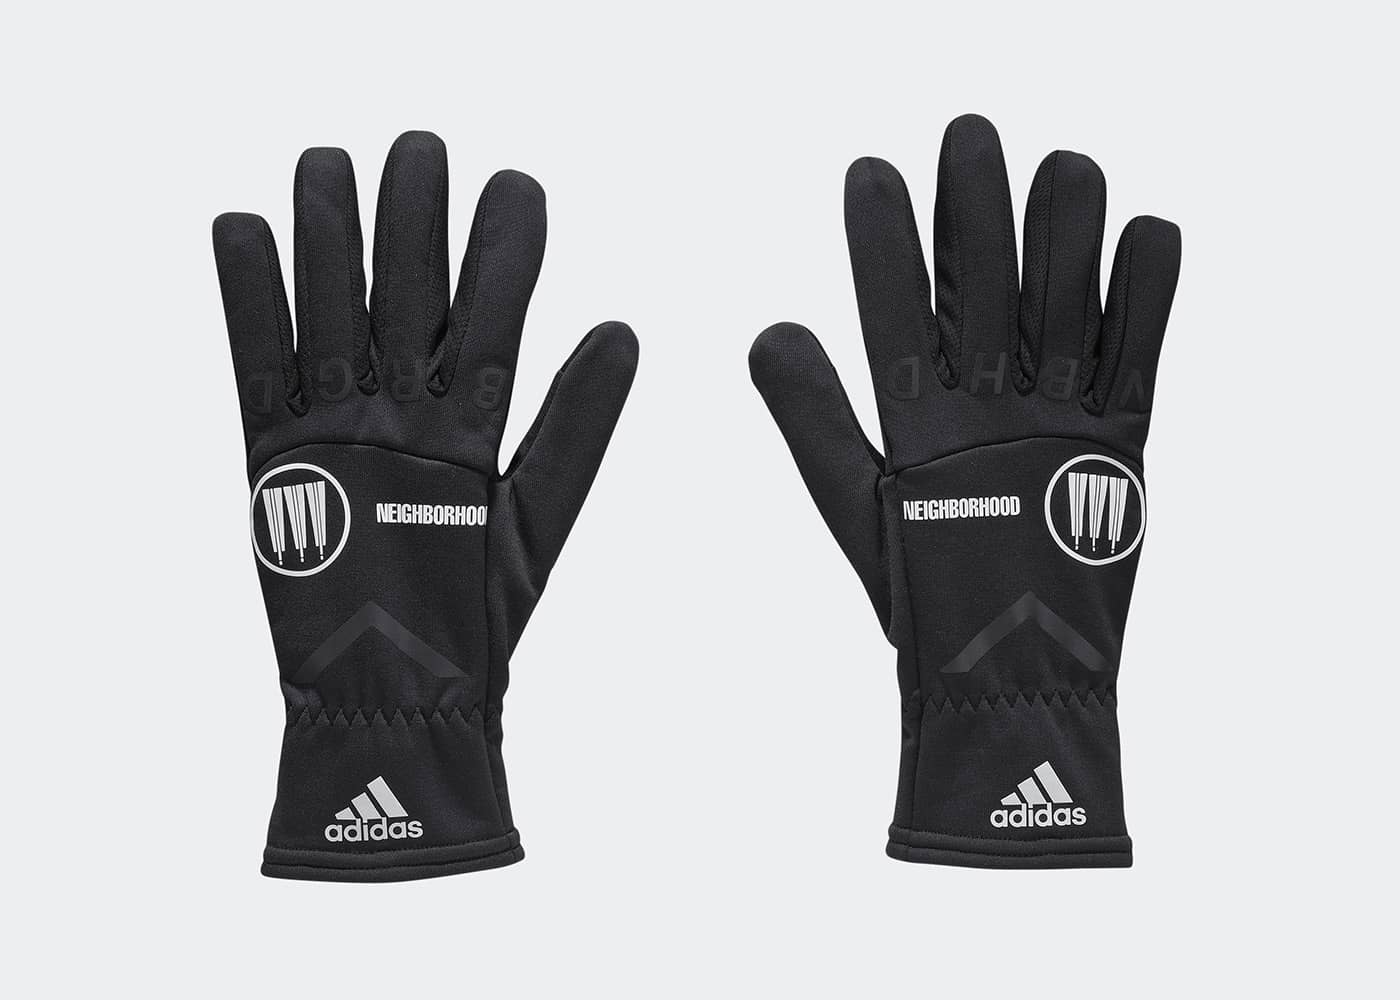 네이버후드 x 아디다스 글로브(NEIGHBORHOOD x adidas Gloves)-FR0731